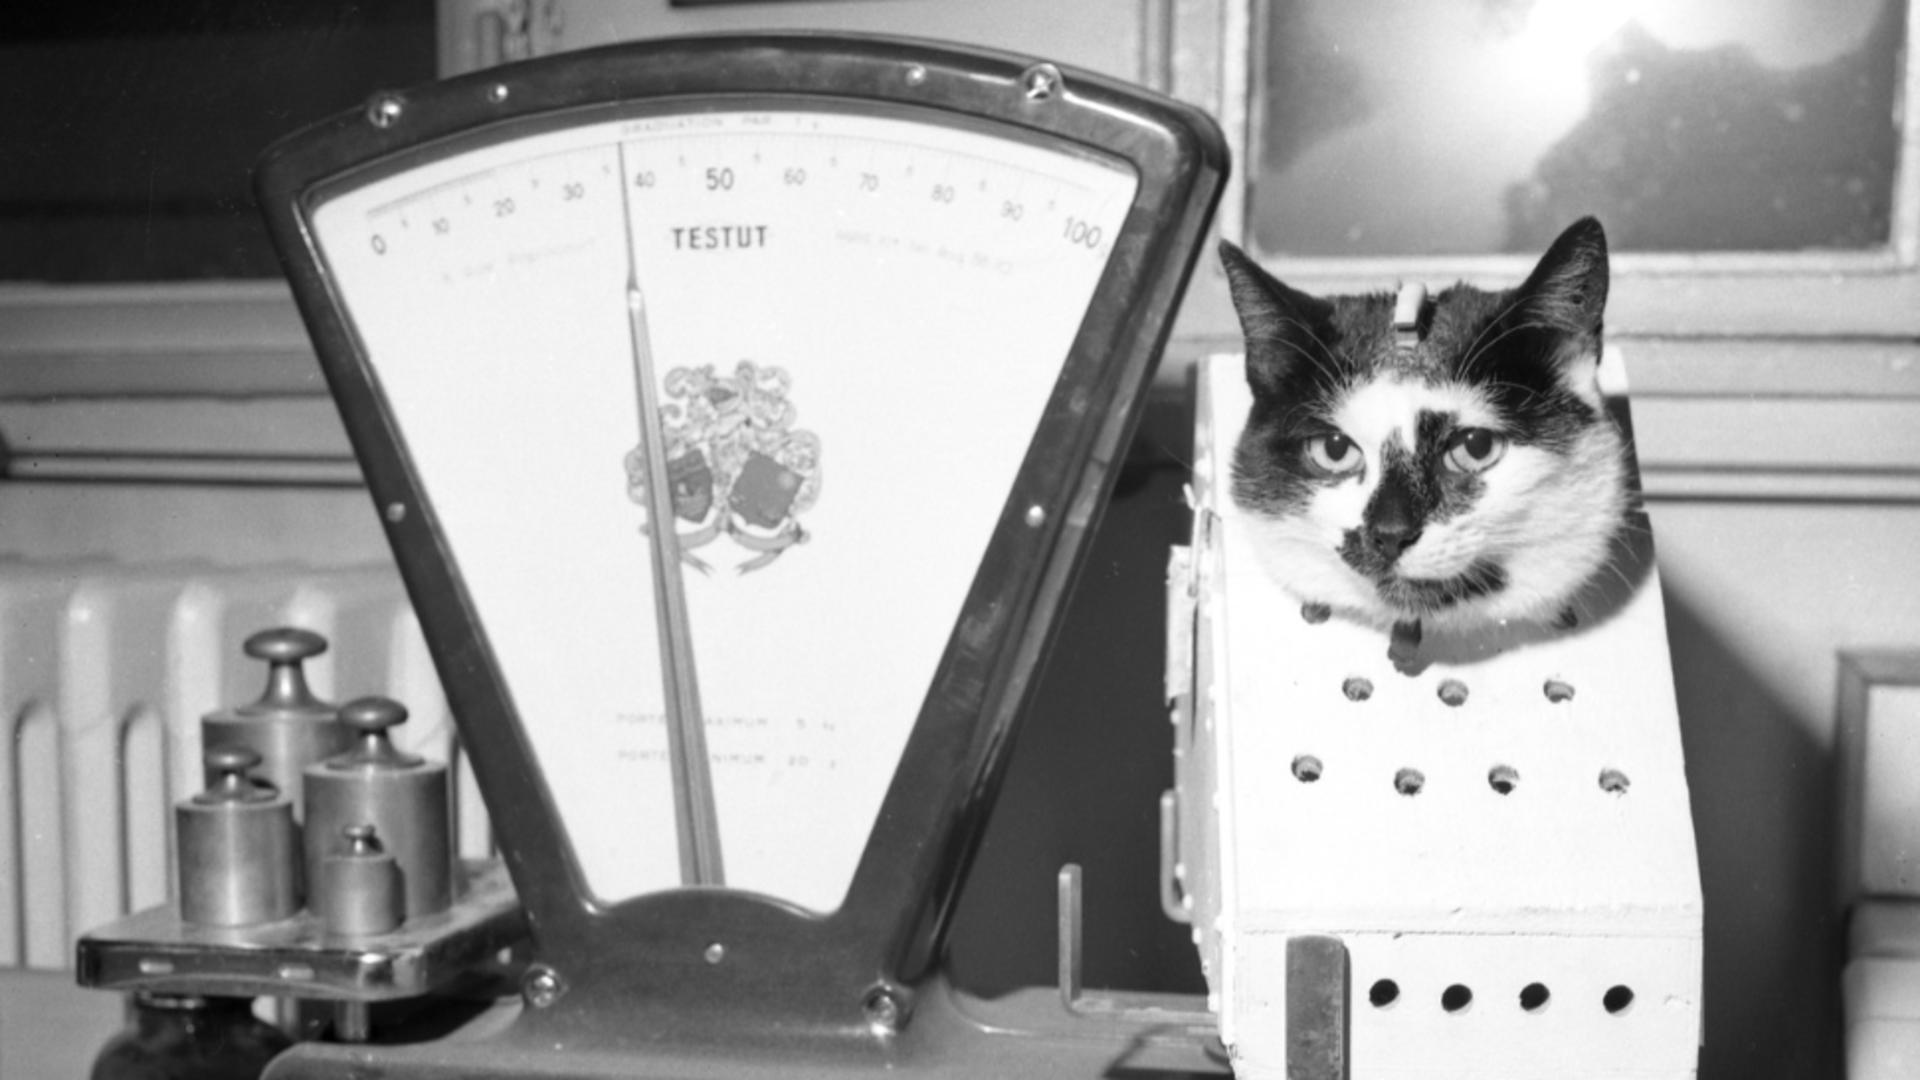 Pisică măsurată și cântărită pentru teste cosmice (1960 - Profimedia)